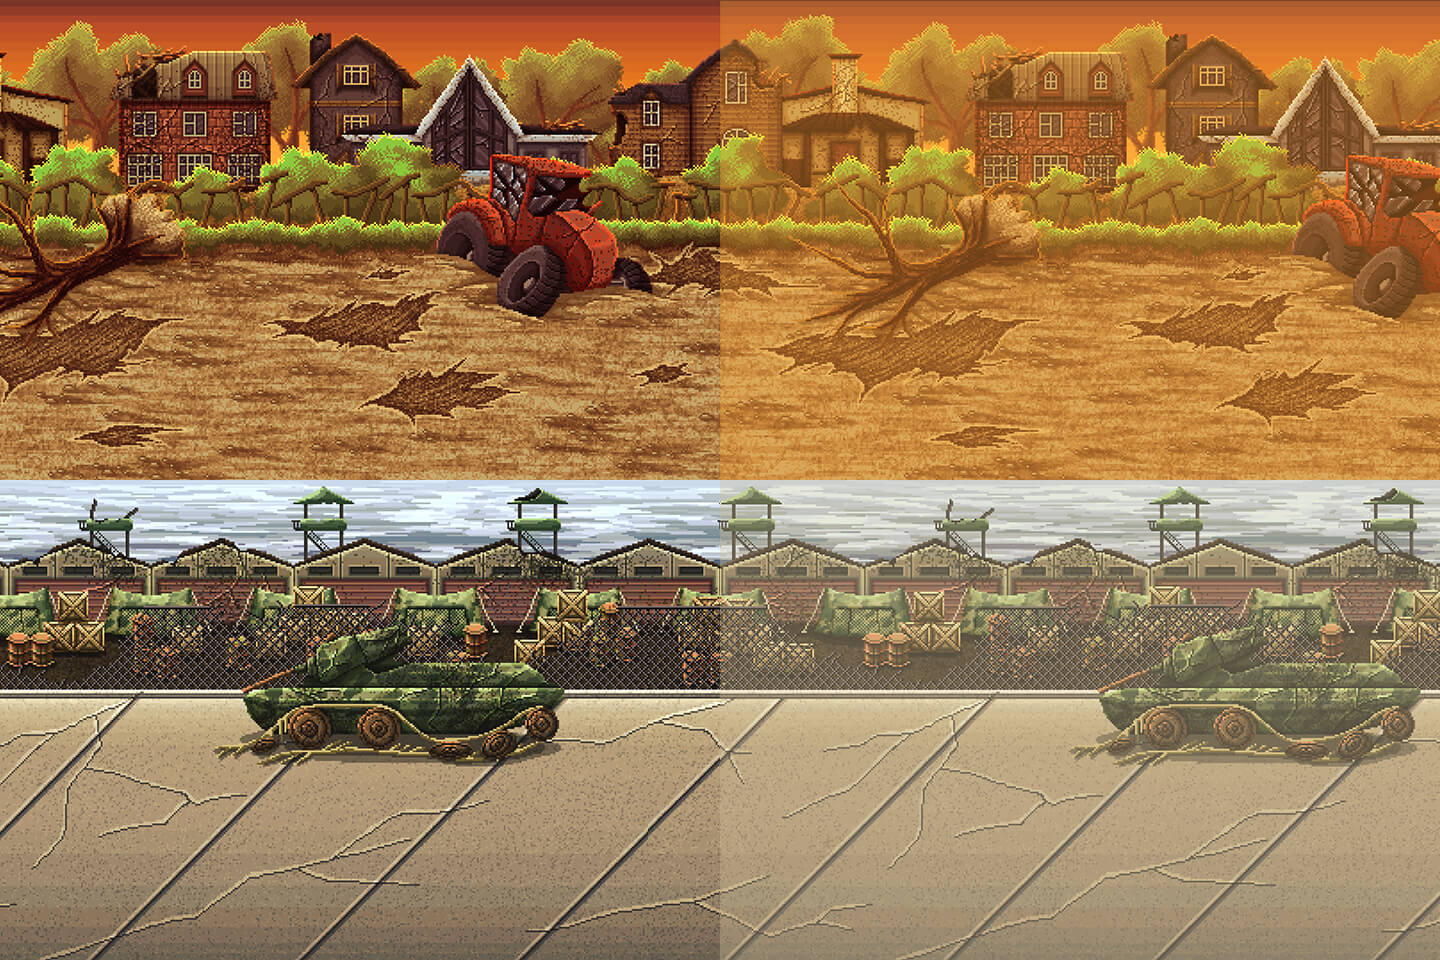 2d Pixel Art Battle Backgrounds Craftpix Net